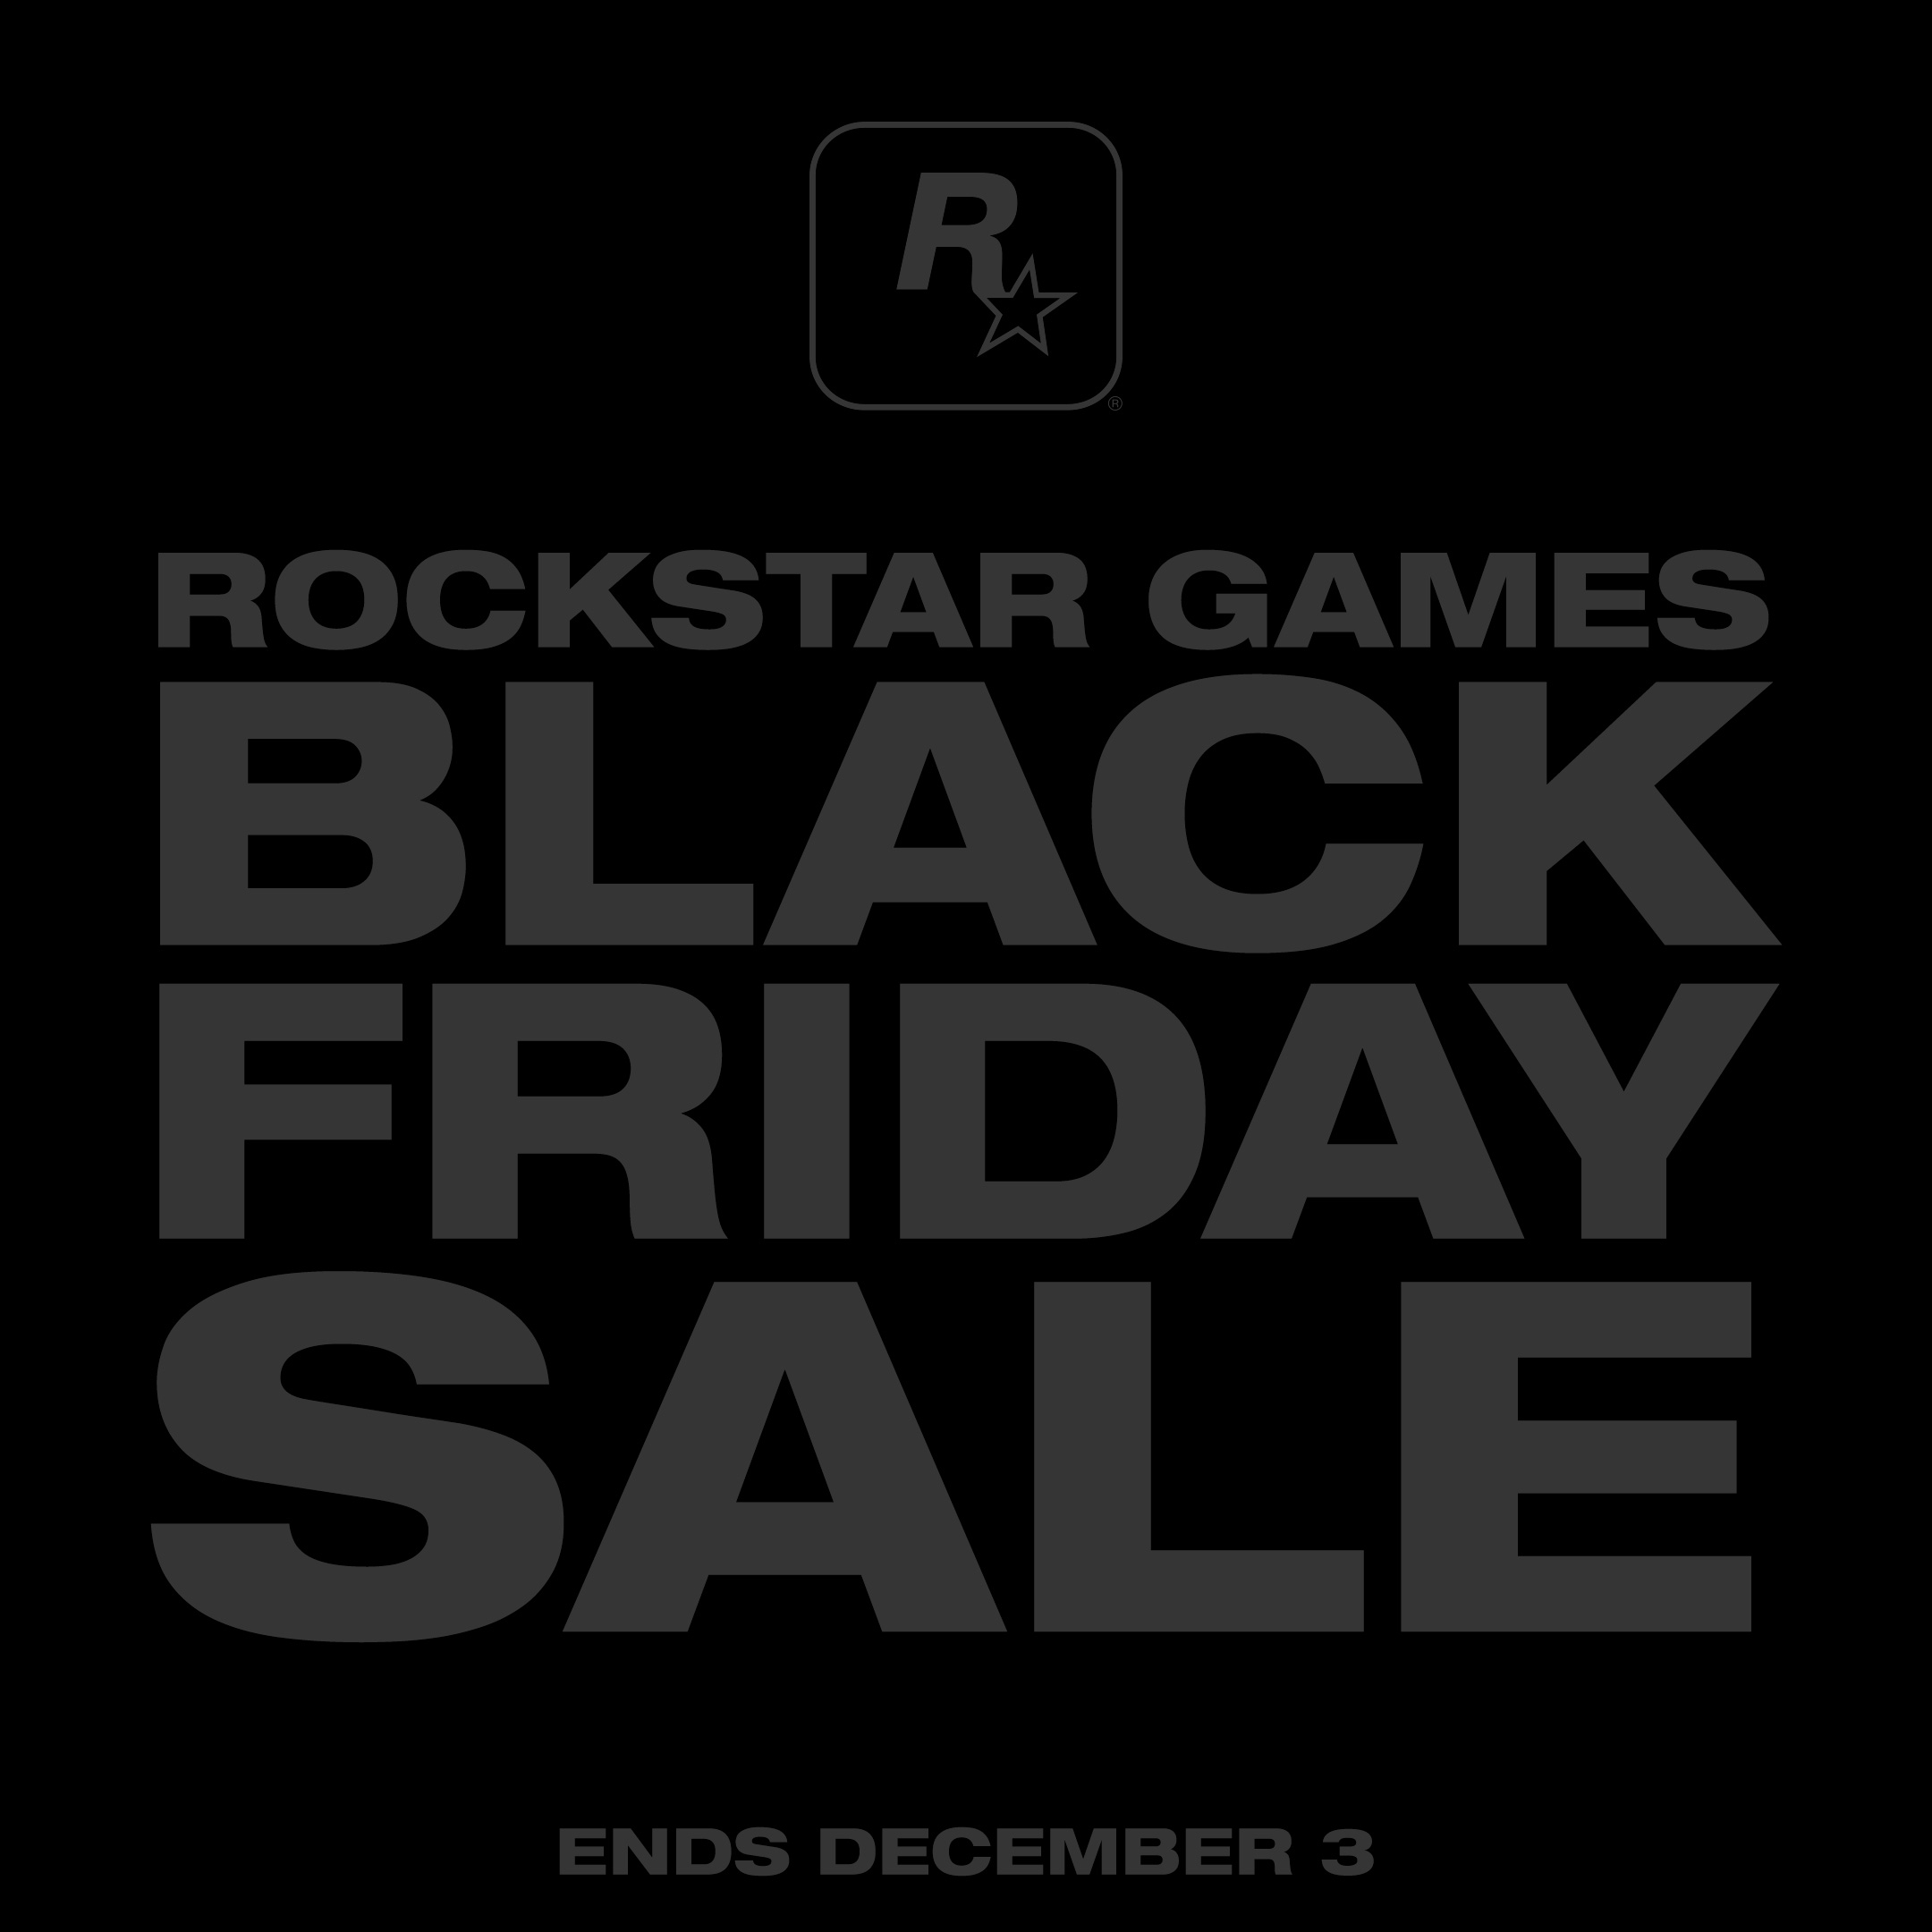 Распродажа Rockstar Games в честь Черной пятницы 2019